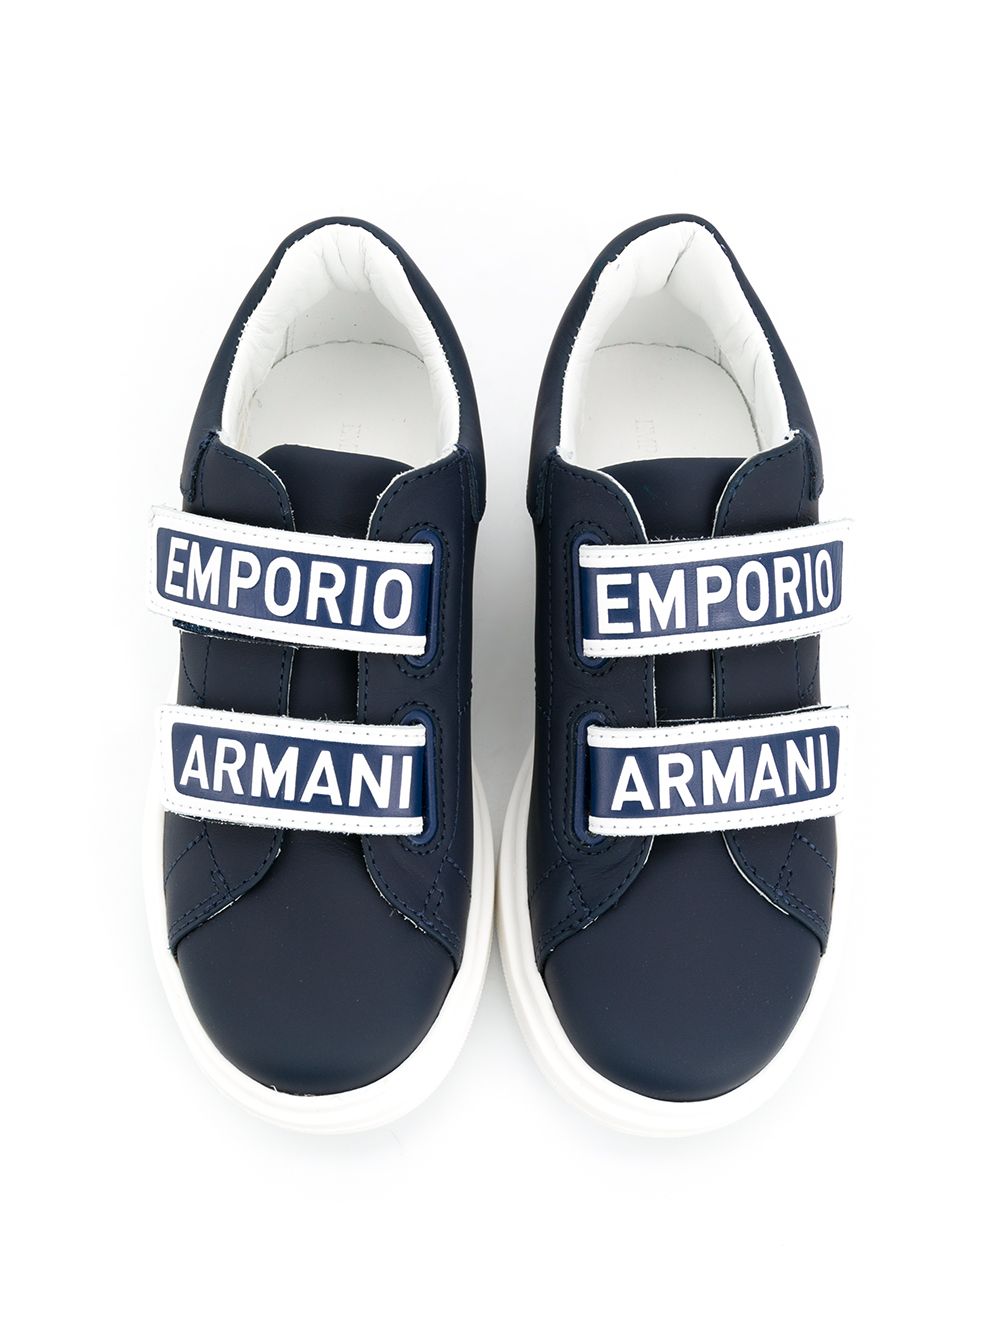 фото Emporio armani kids кроссовки с логотипом